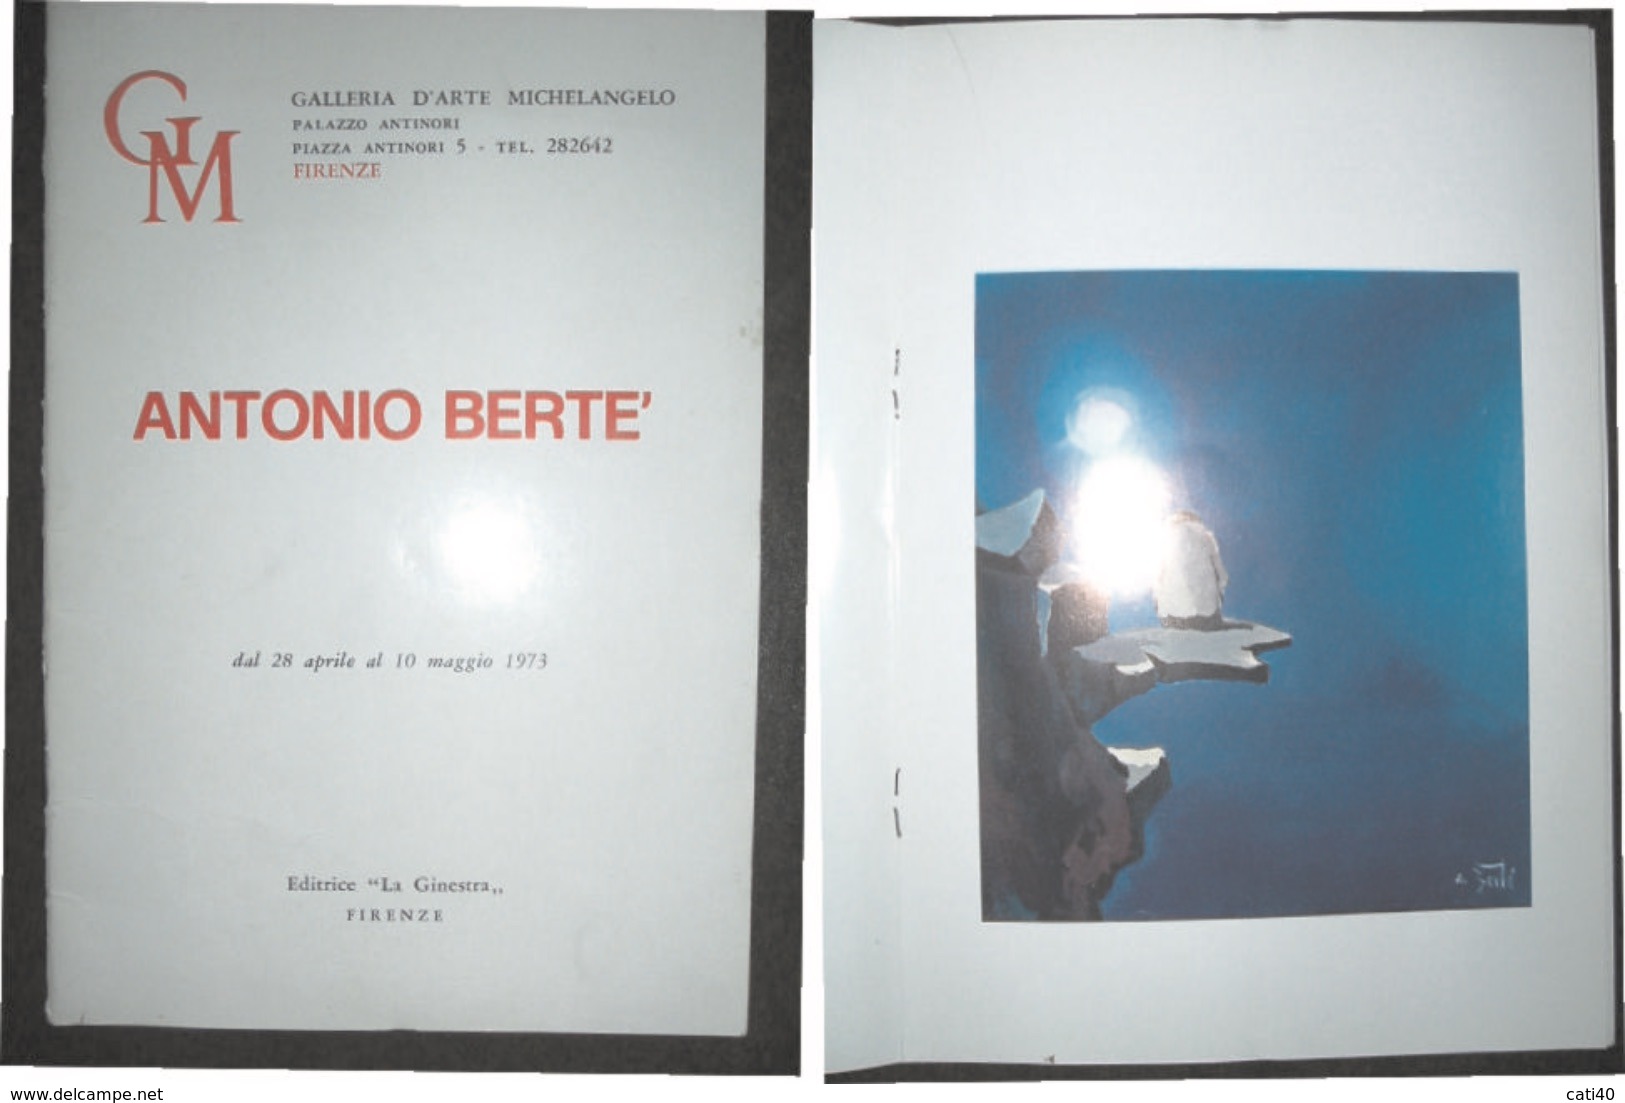 ANTONIO BERTE' CATALOGO DELLA MOSTRA PERSONALE ALLA GALLERIA D'ARTE MICHELANGELO FIRENZE DAL 28 APRILE AL 10 MAGGIO 1973 - Textes Scientifiques